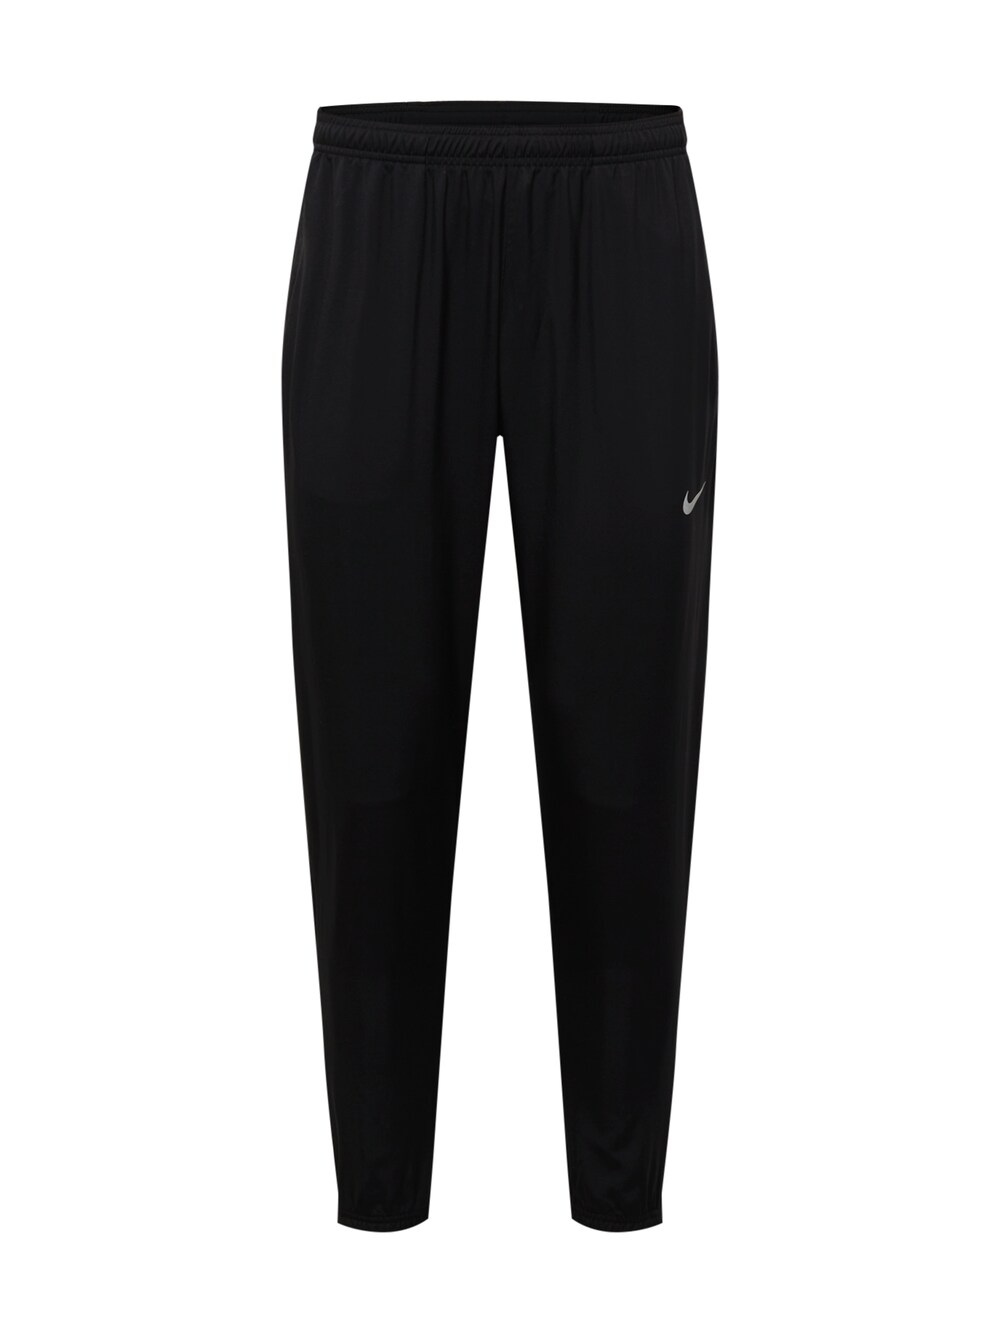 Зауженные тренировочные брюки Nike Challenger, черный зауженные тренировочные брюки nike one pro черный